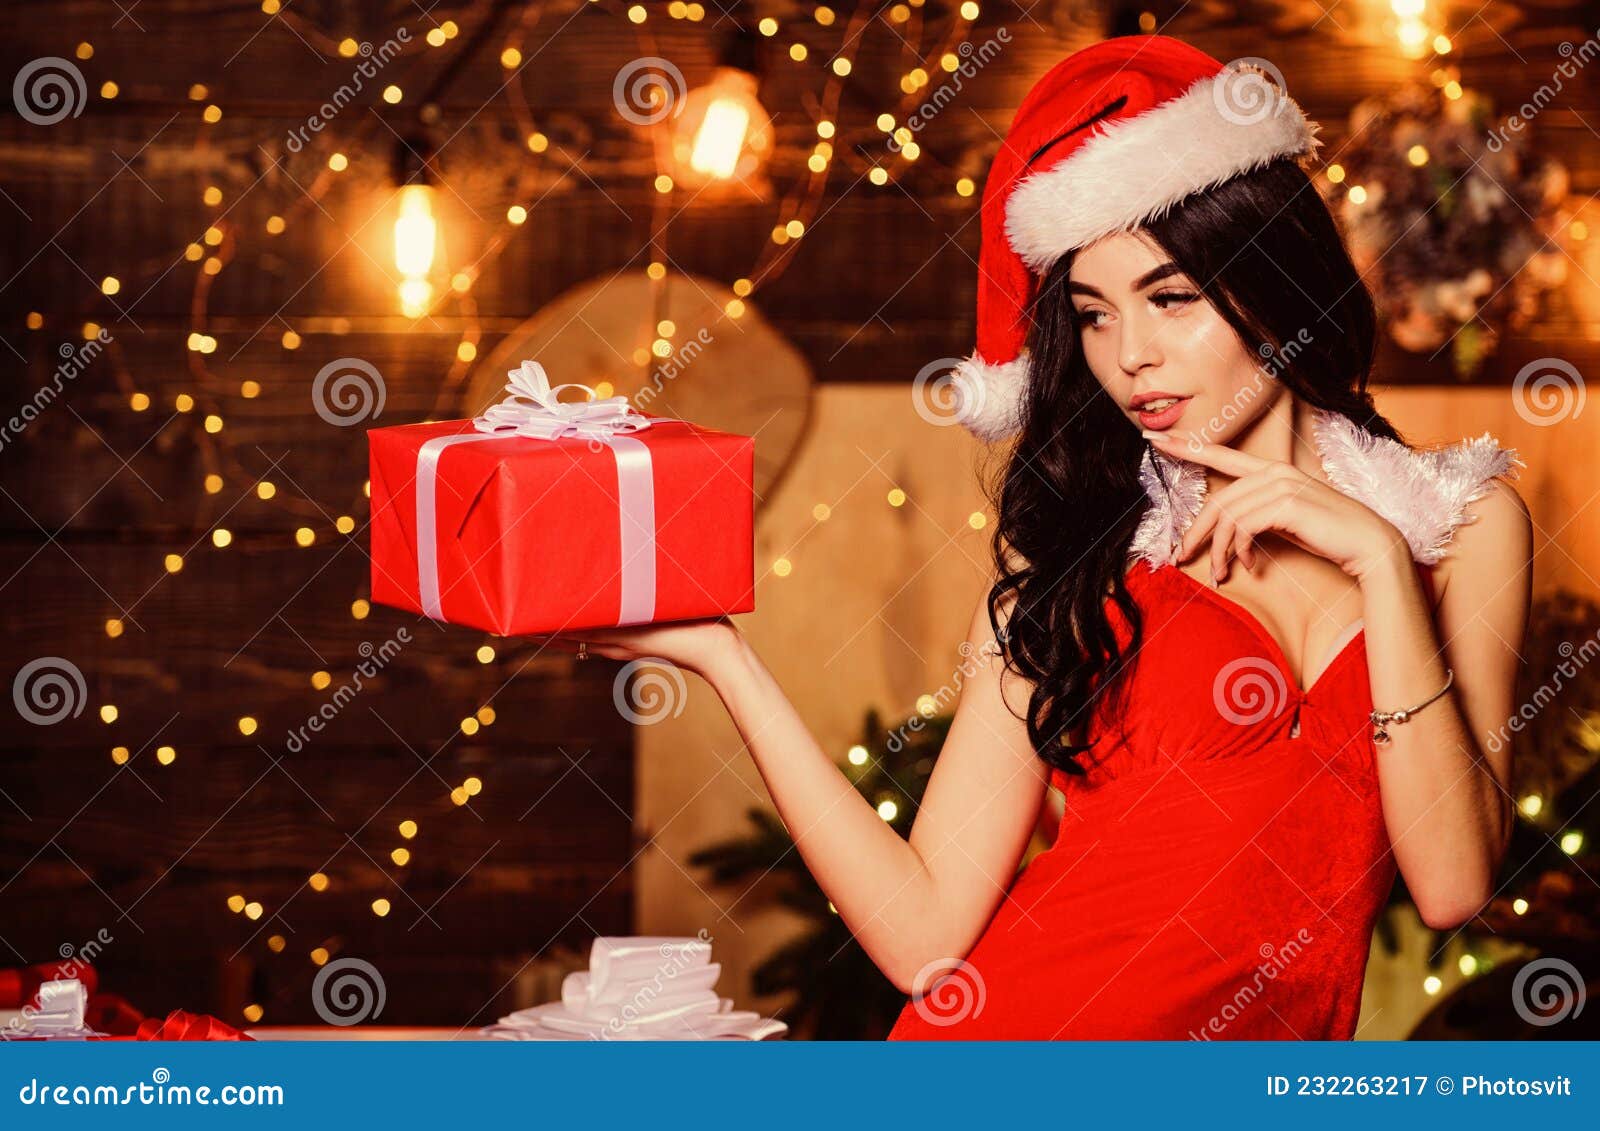 Desirable Santa Girl. Gift for Adults. Gift